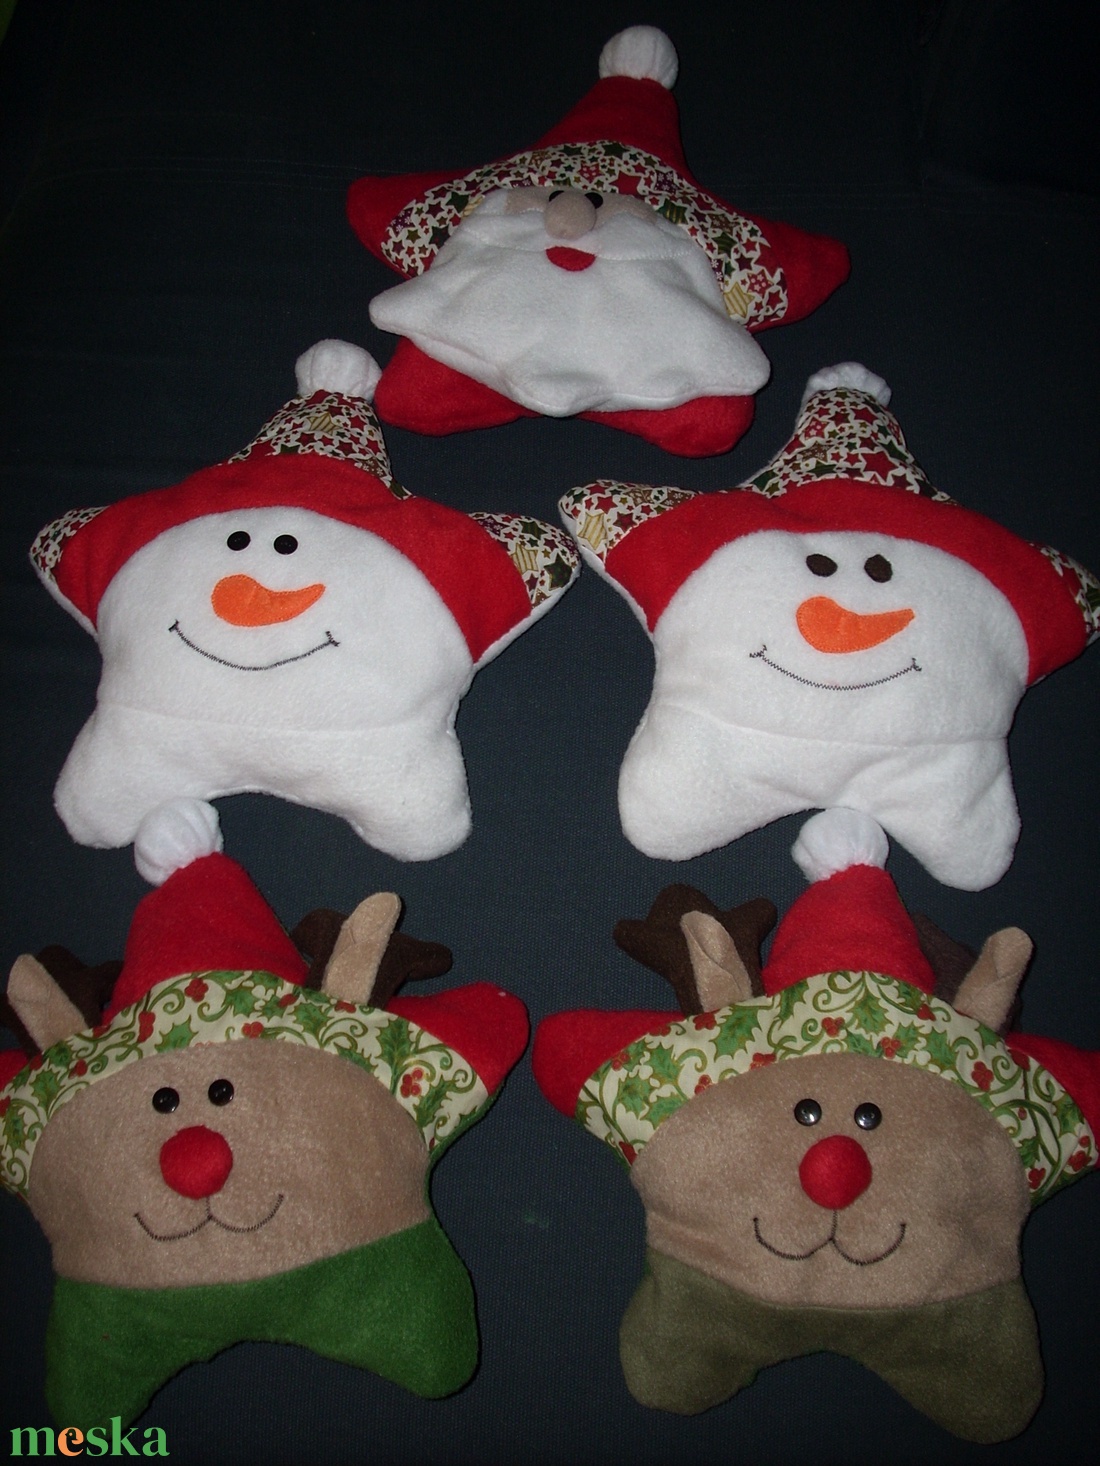 Csillag alakú párnák,különböző arccal (szarvas,hóember,mikulás ...) - karácsony - karácsonyi lakásdekoráció - karácsonyi manók, figurák - Meska.hu